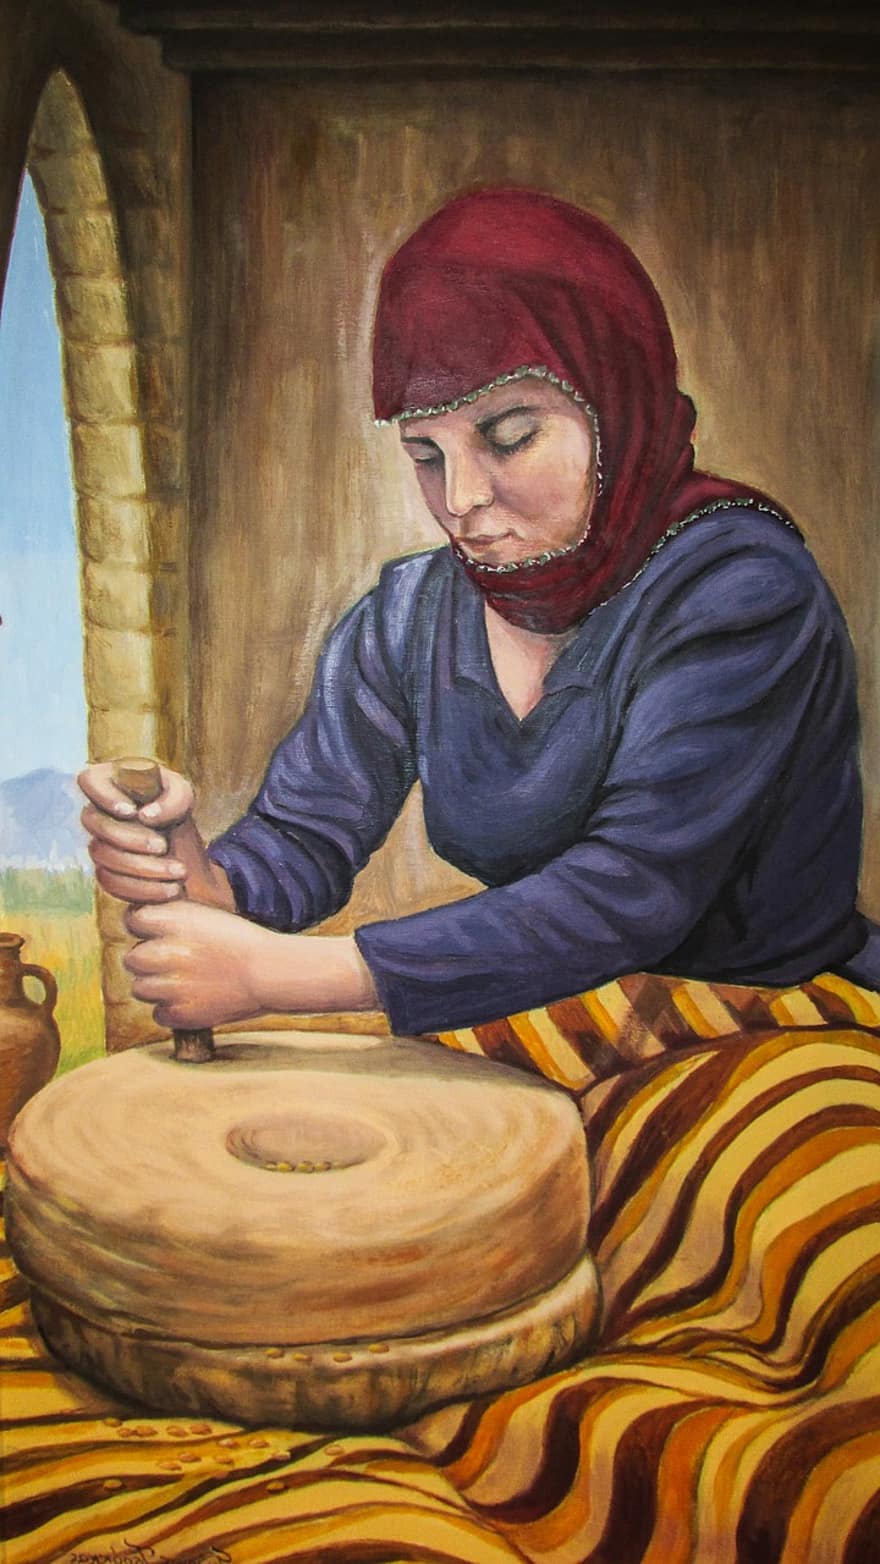 Zypern, Bäckerei, Weizen mahlen, traditionell, Malerei, Brot, Lebensmittel, Weizen, Dherynie, Volkskundemuseum